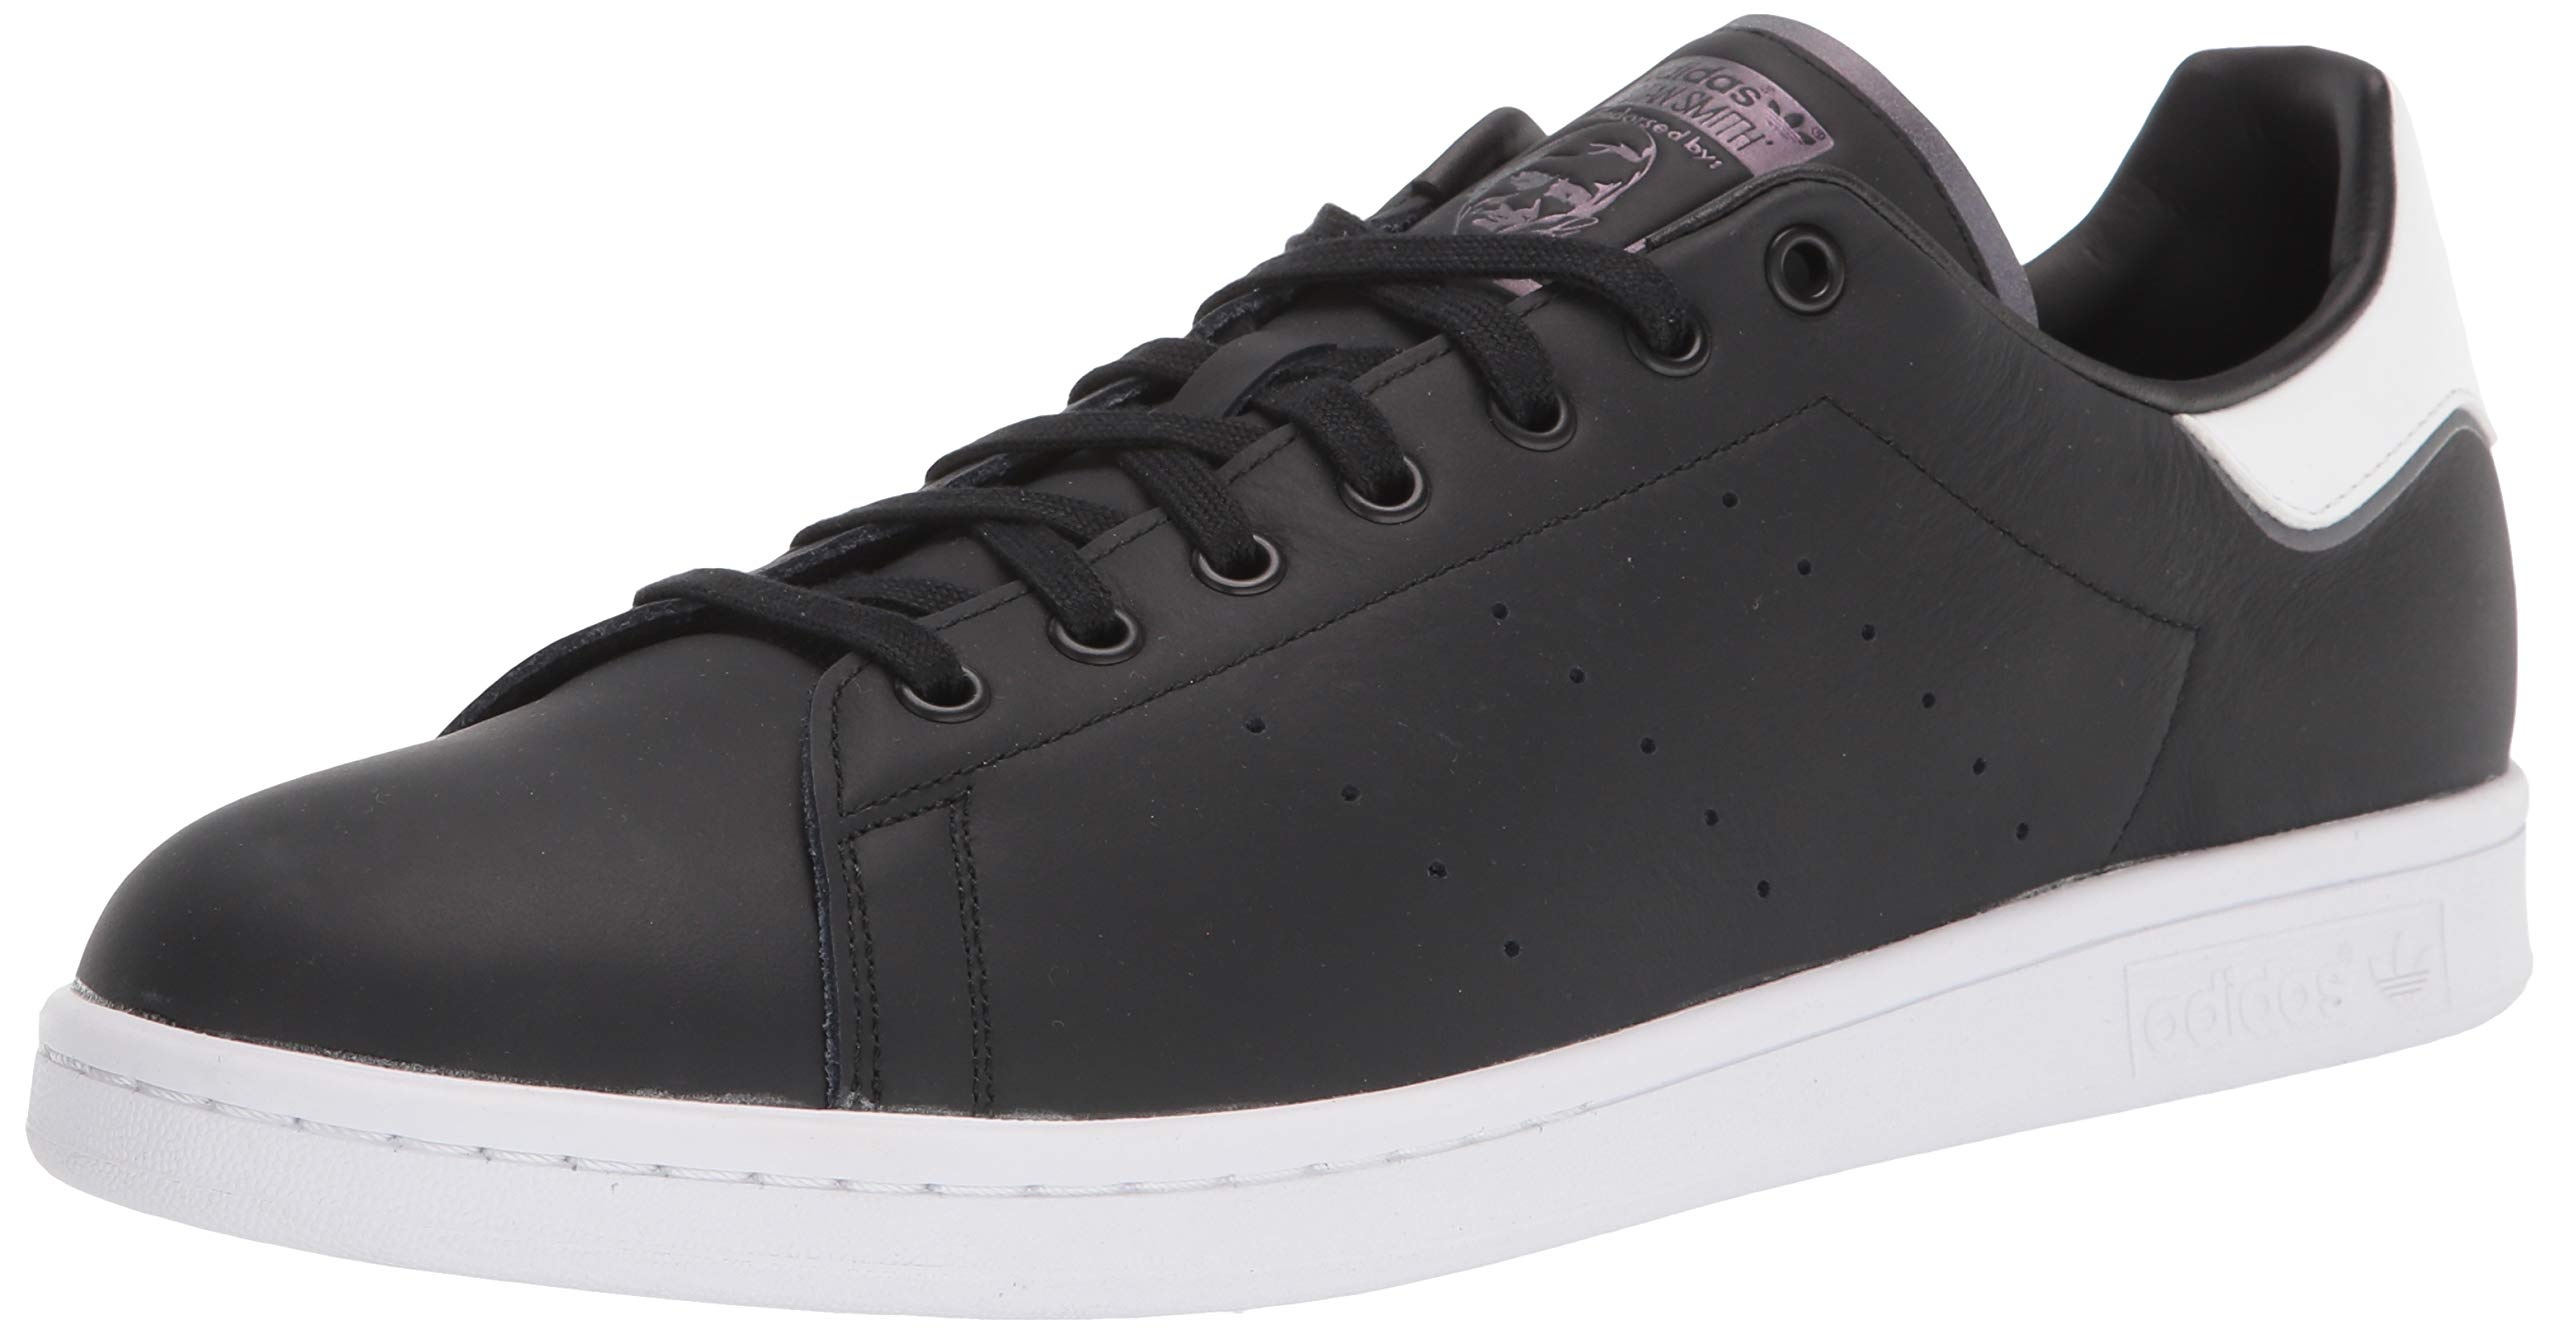 adidas Originals Stan Smith Herren-Sneaker, Schwarz - Schwarz Schwarz Weiß - Größe: 42 1/3 EU